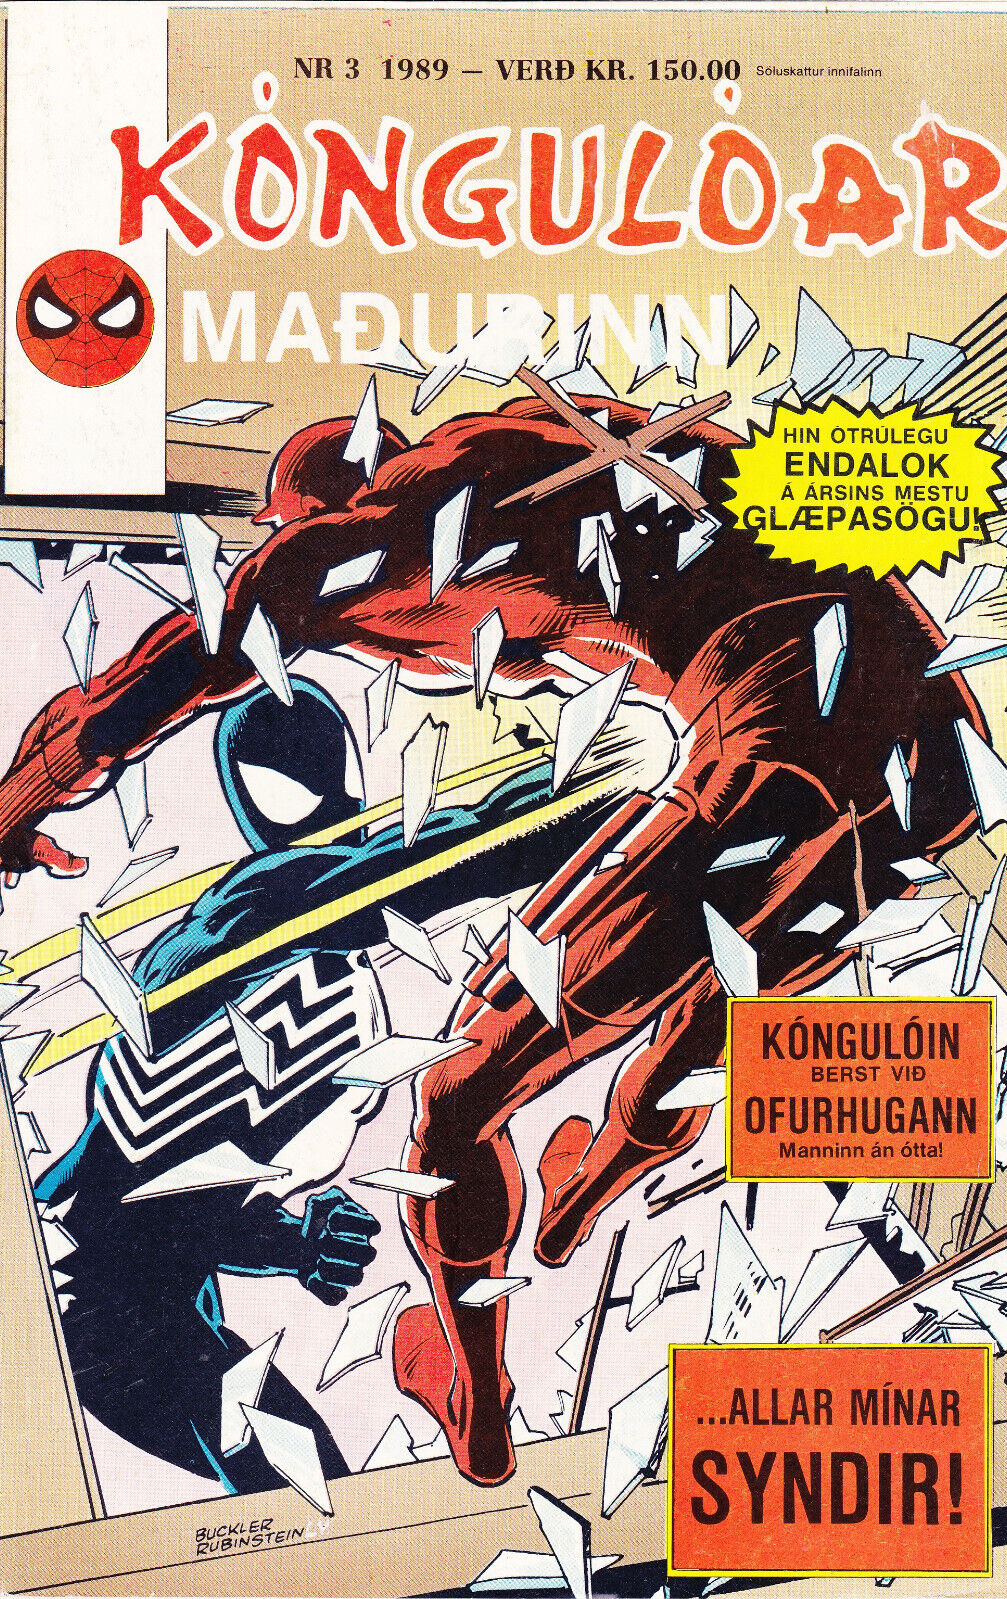 Spider-Man / Kóngulóarmaðurinn  #3  (1989) in Icelandic